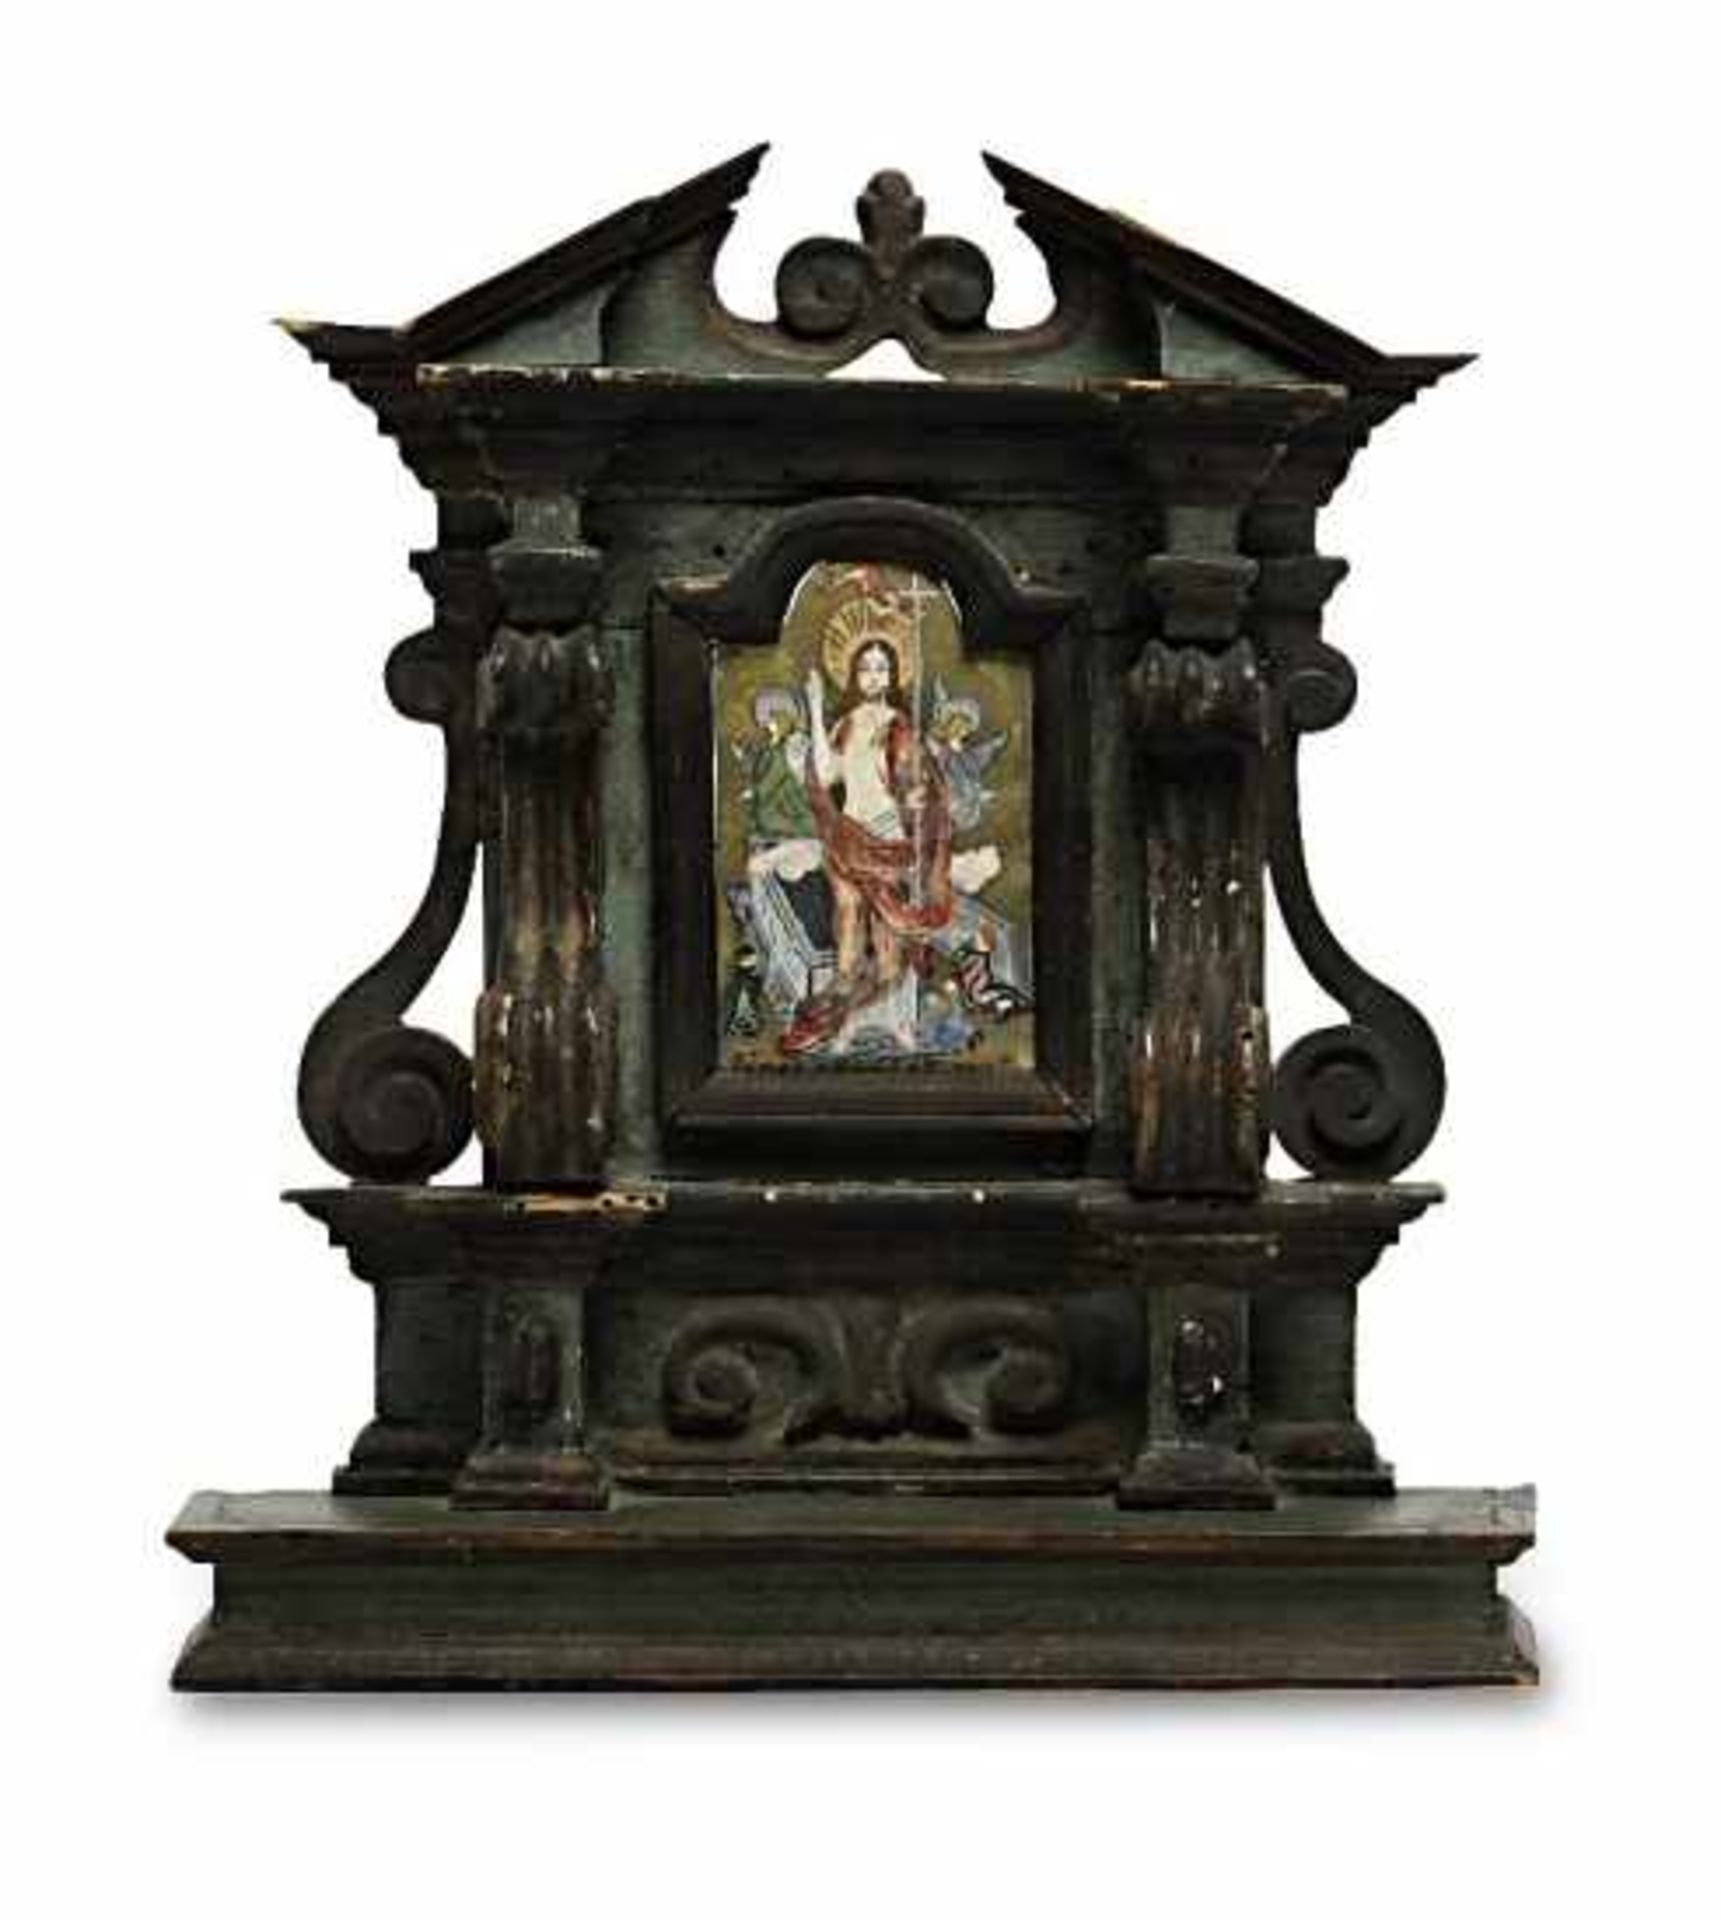 Miniatur-AltarBarockstil Holz, grün und dunkelbraun gebeizt. Altaraufbau mit Voluten und